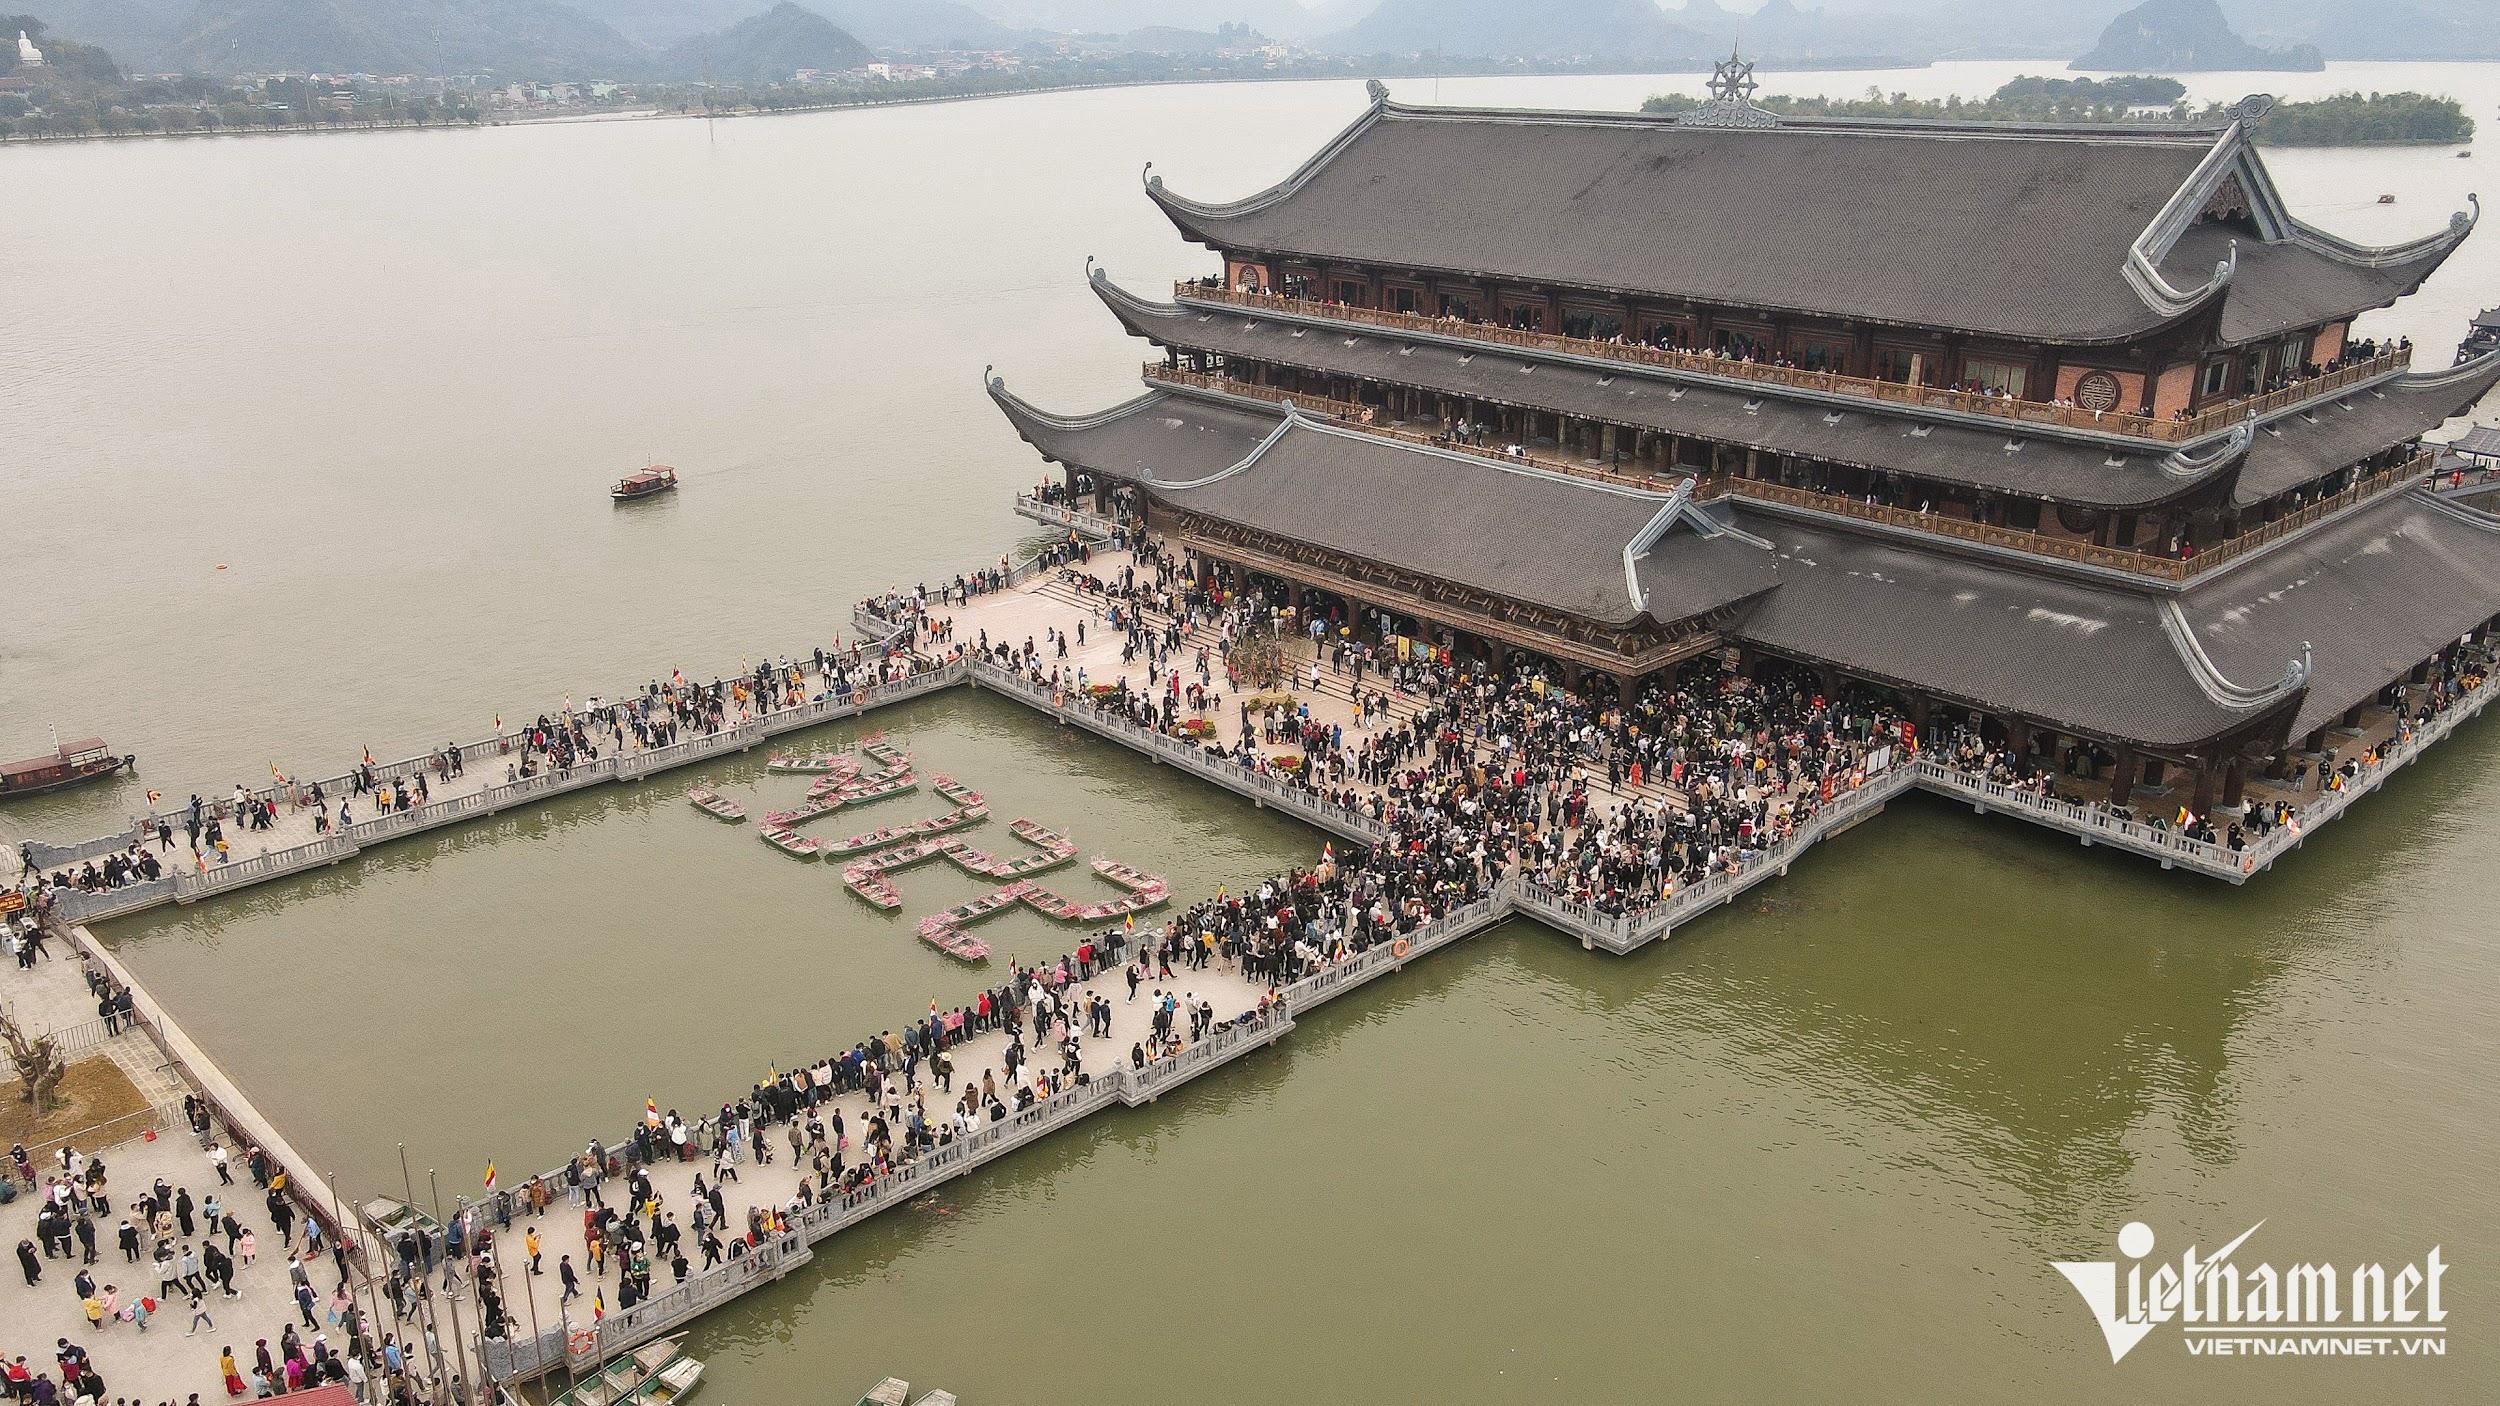 10.000 người đổ về chùa Tam Chúc du xuân những ngày đầu năm mới - 1